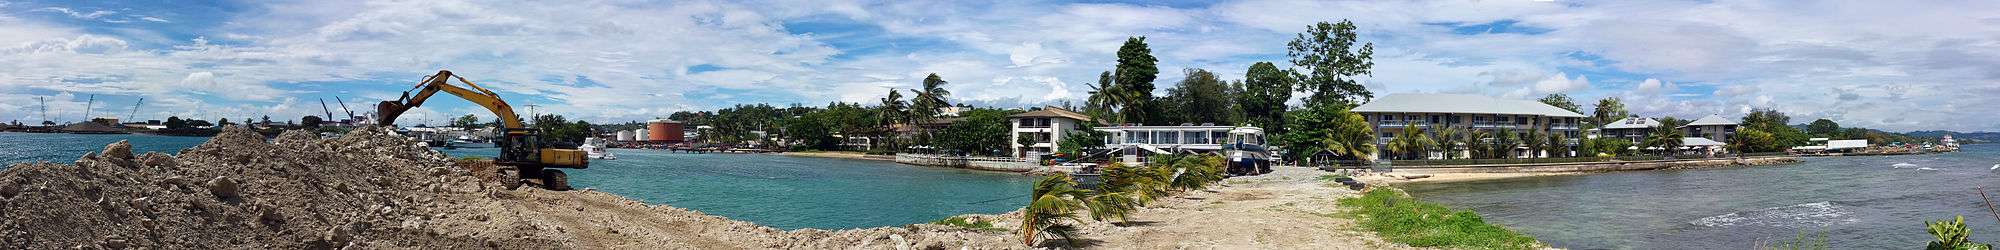 Panorama_of_Breakwater,_Honiara.jpg